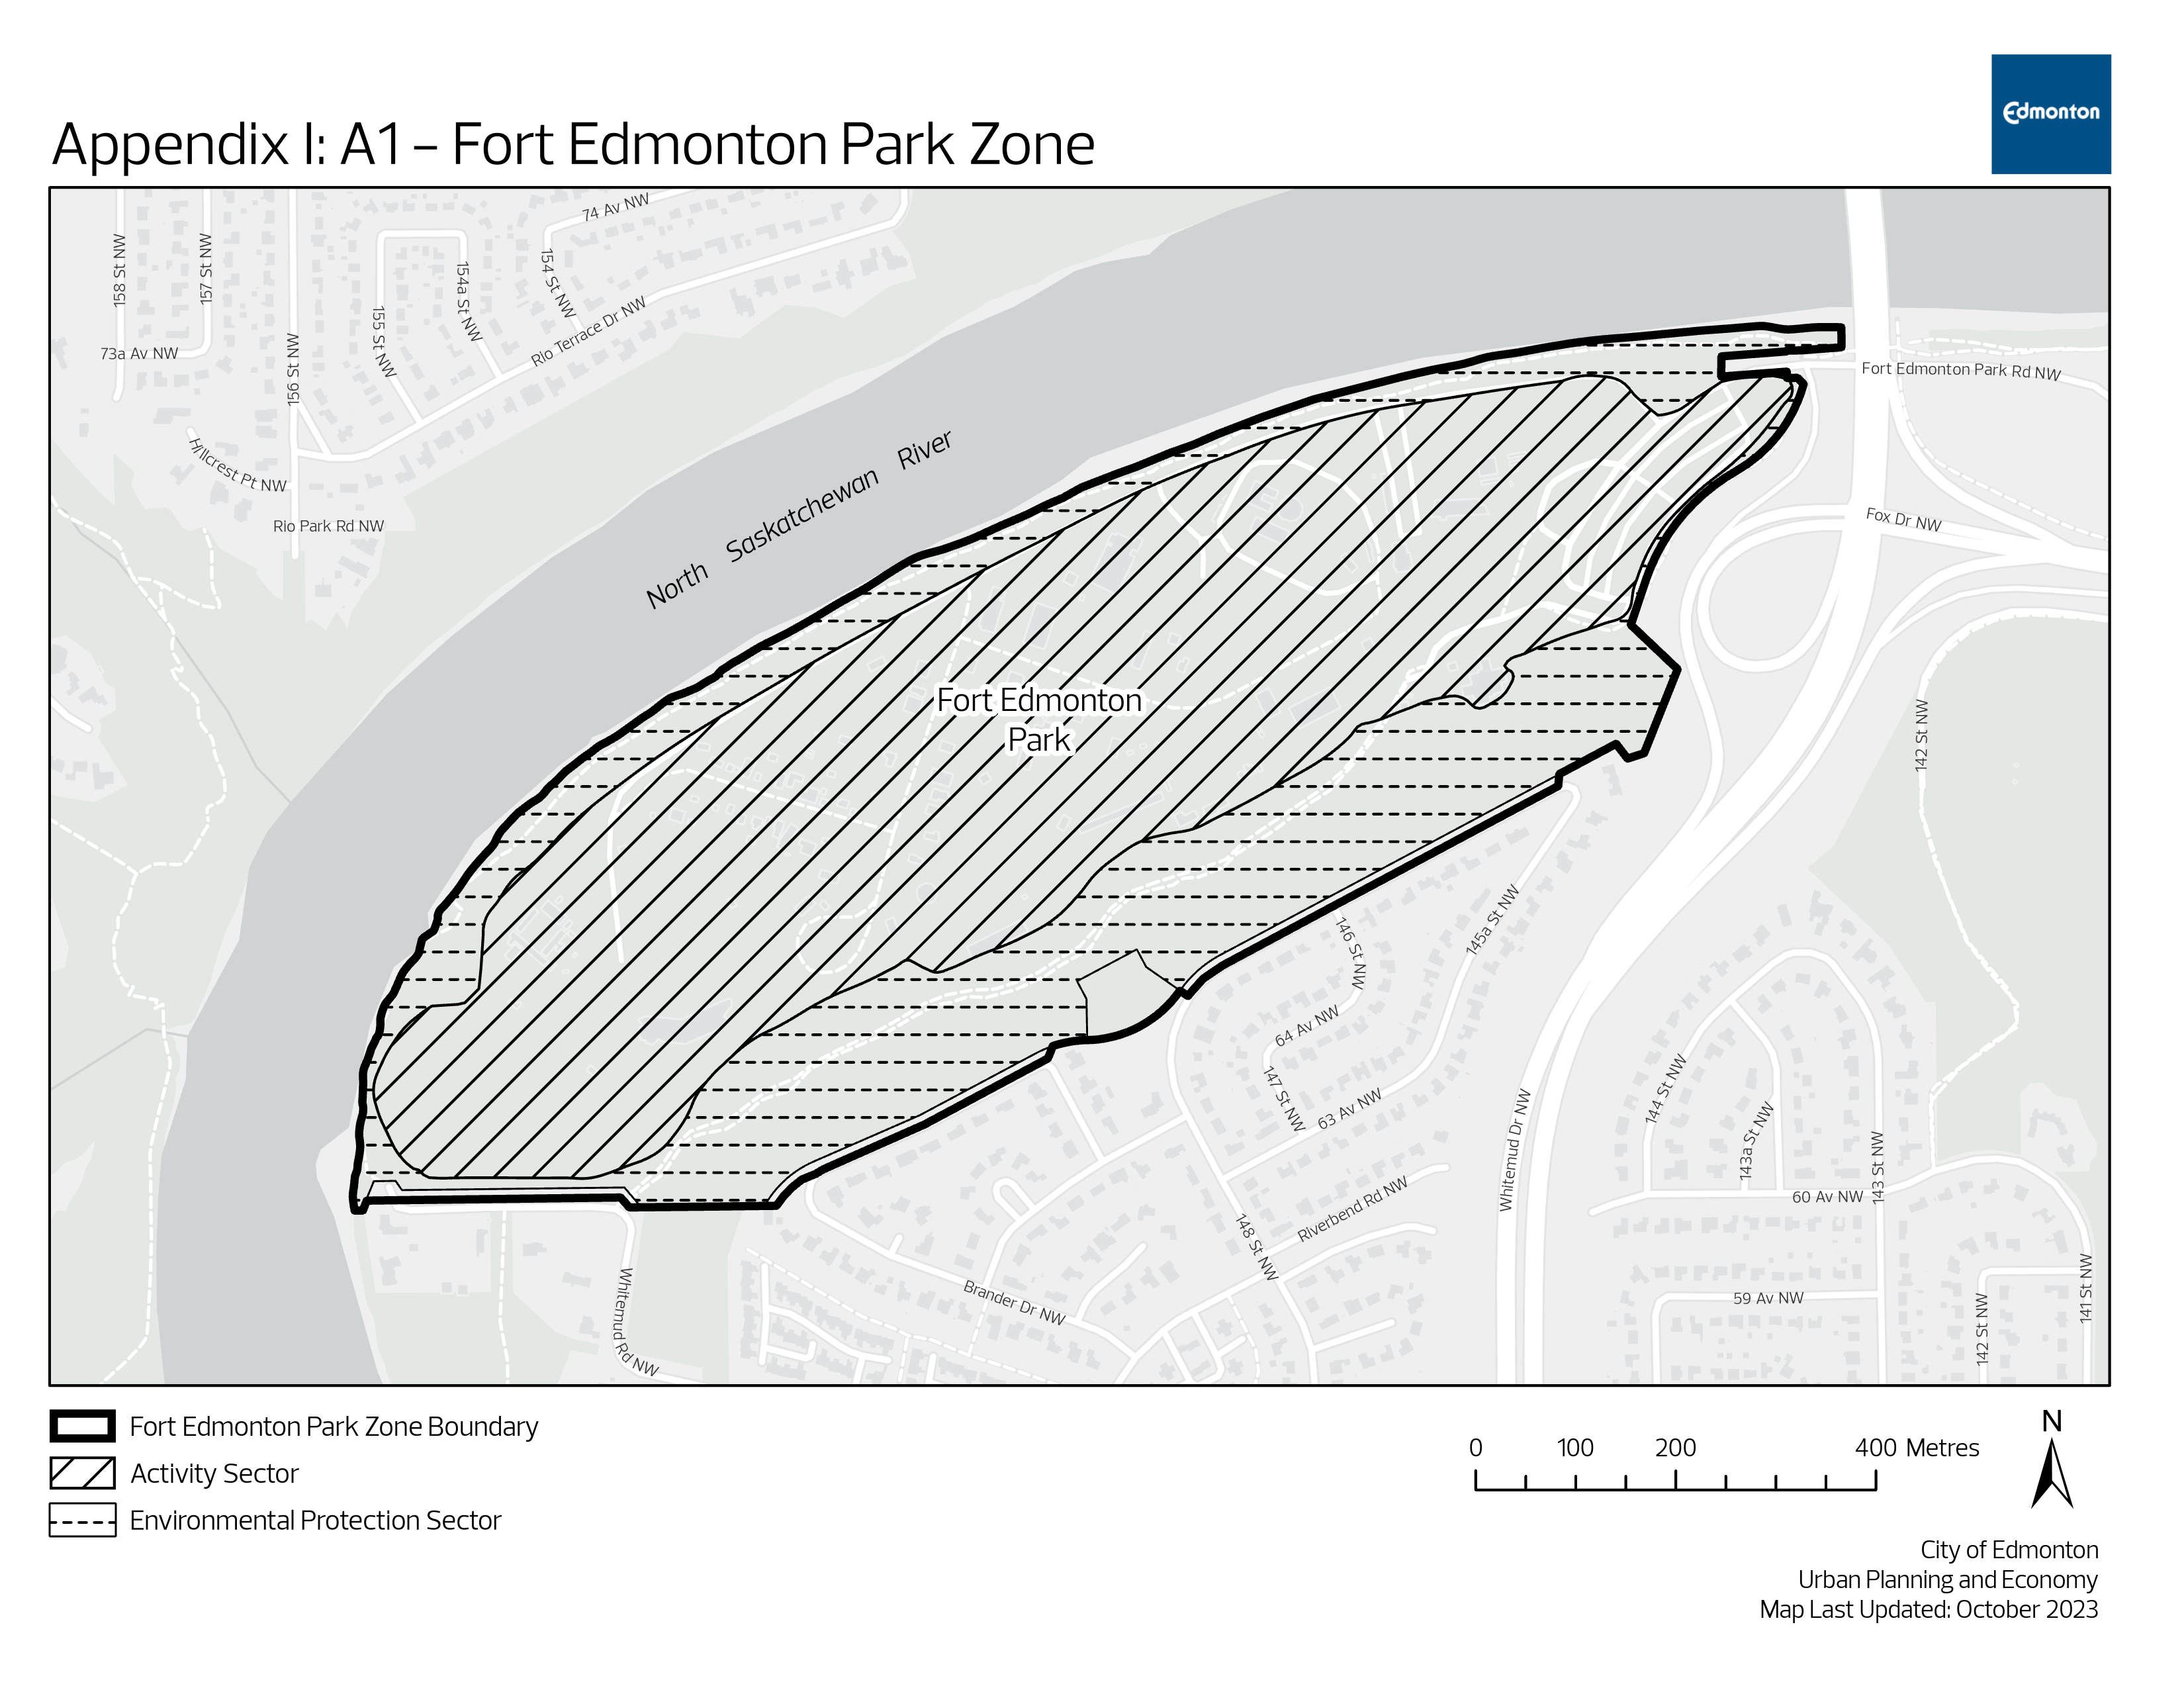 A1 - Fort Edmonton Park Zone map